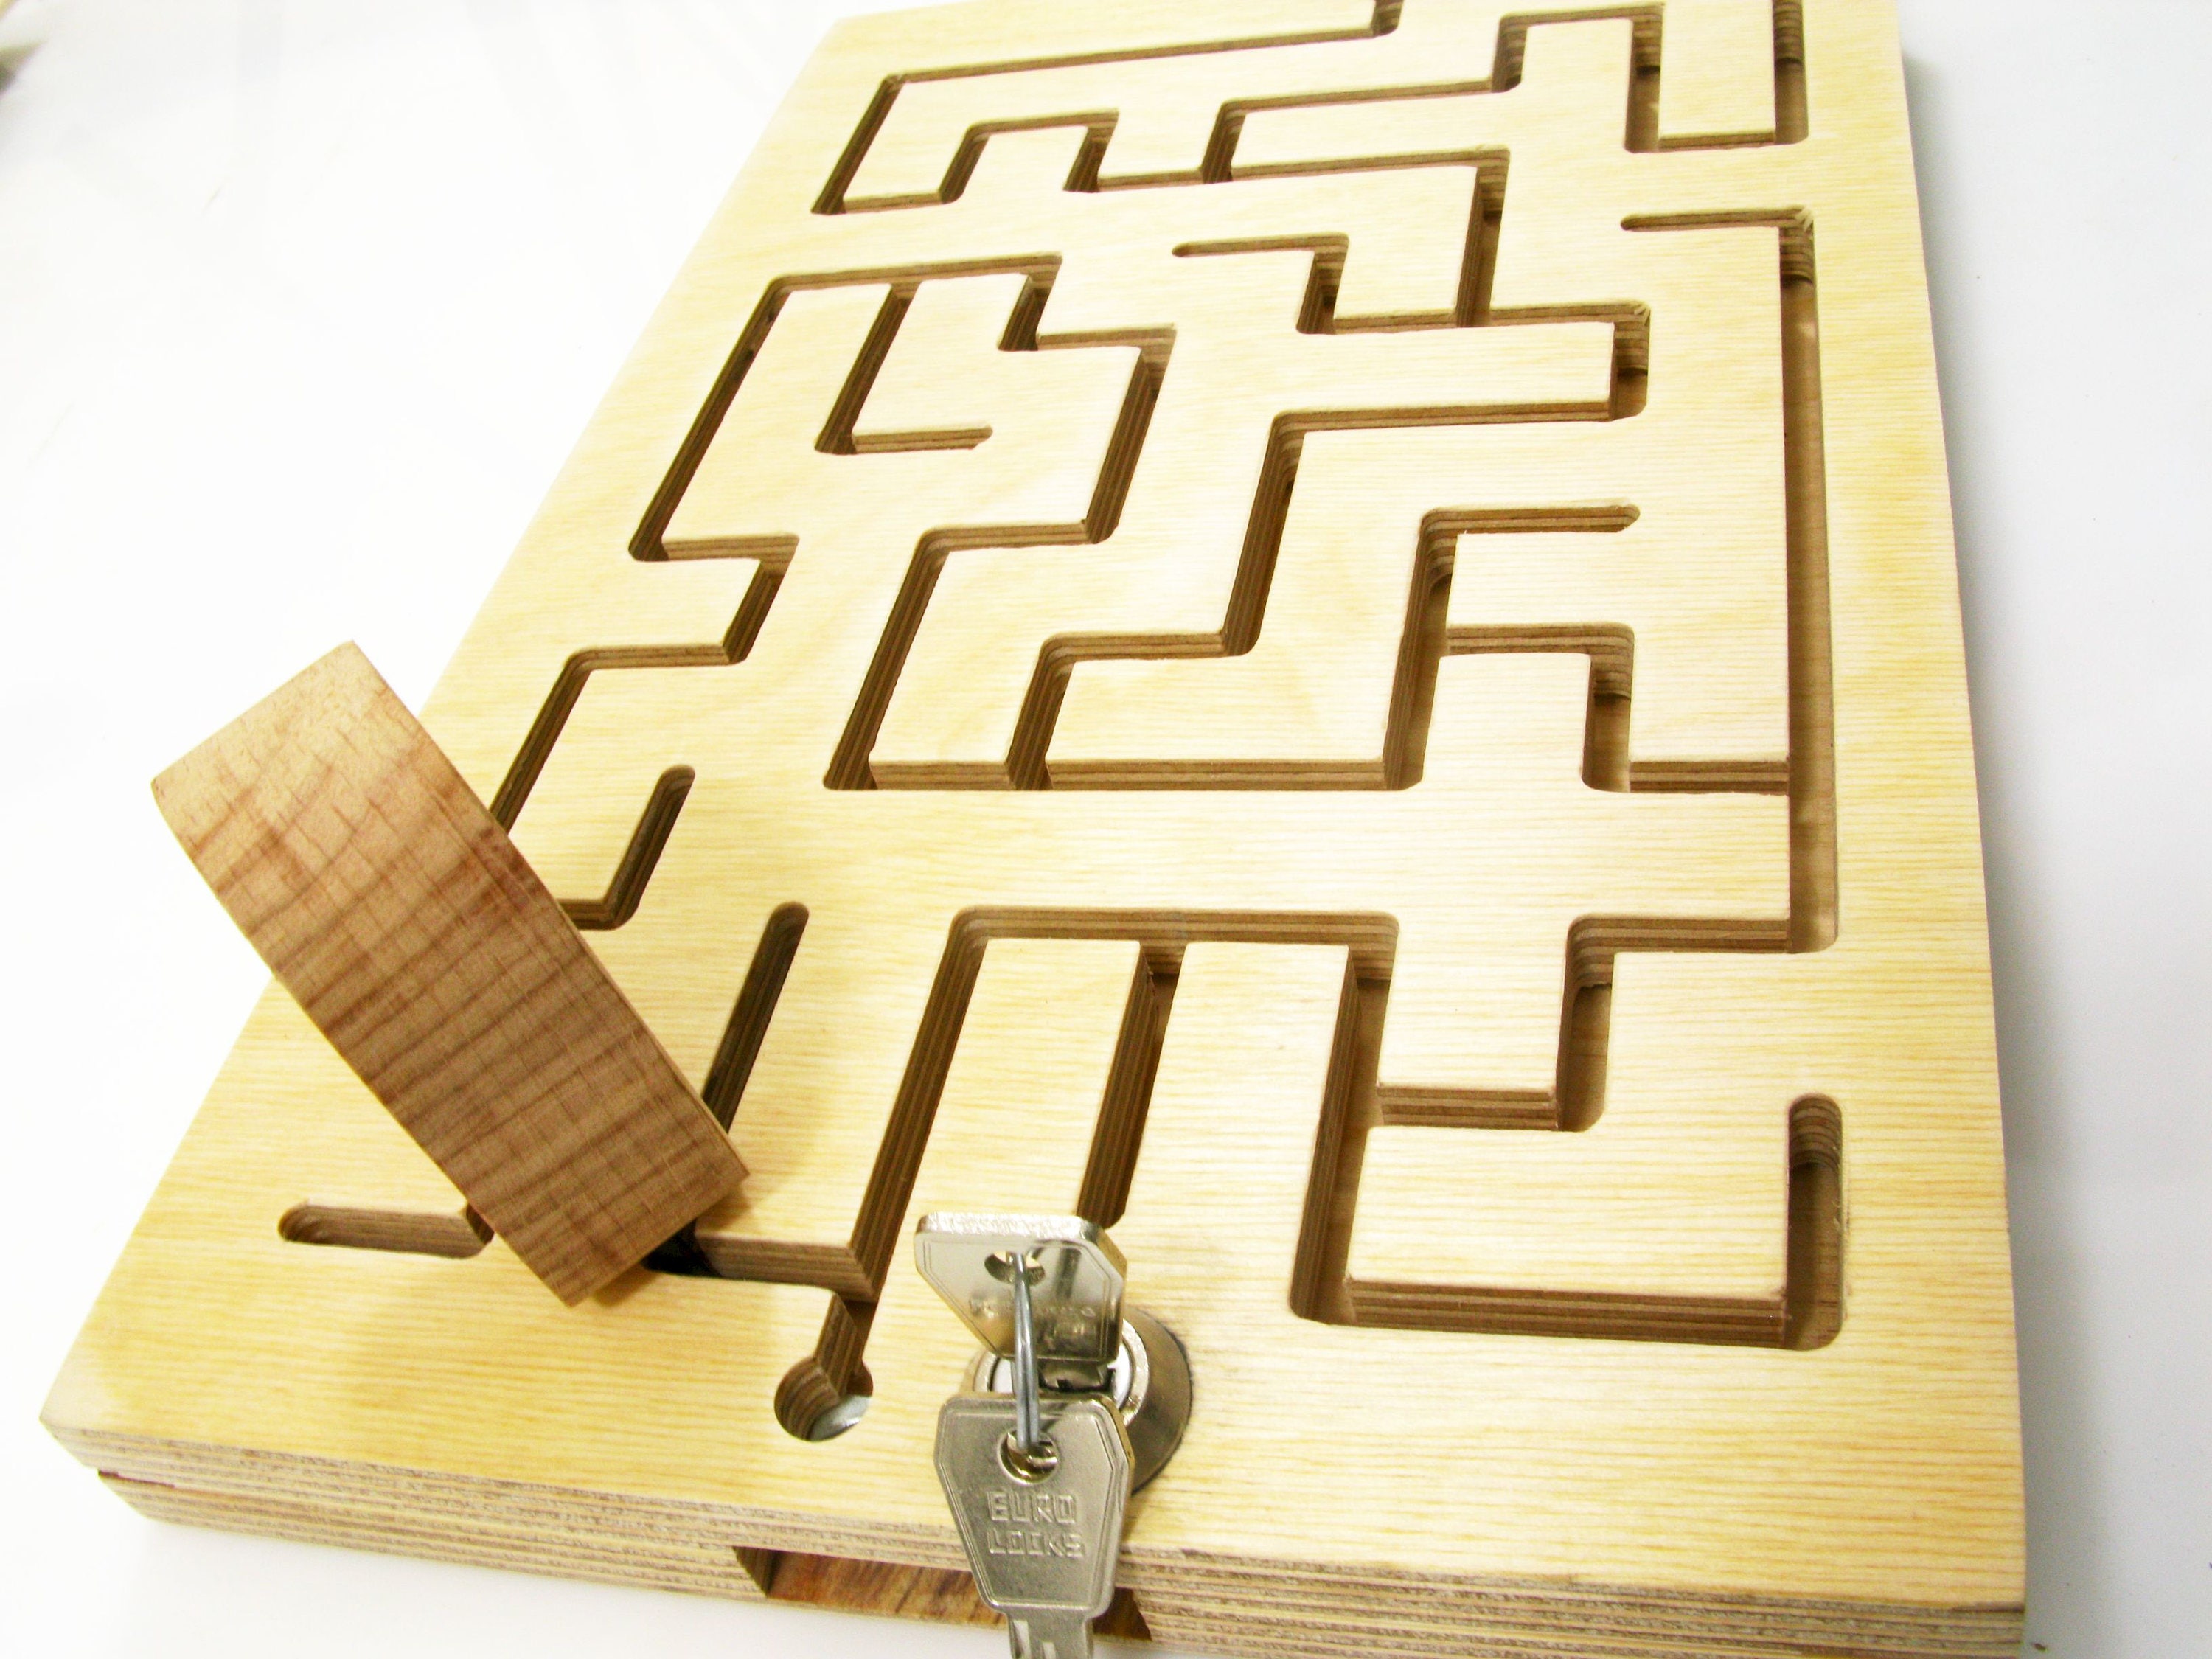 Labyrinthe carré en bois. Un casse tête à petit prix pour enfants et adultes